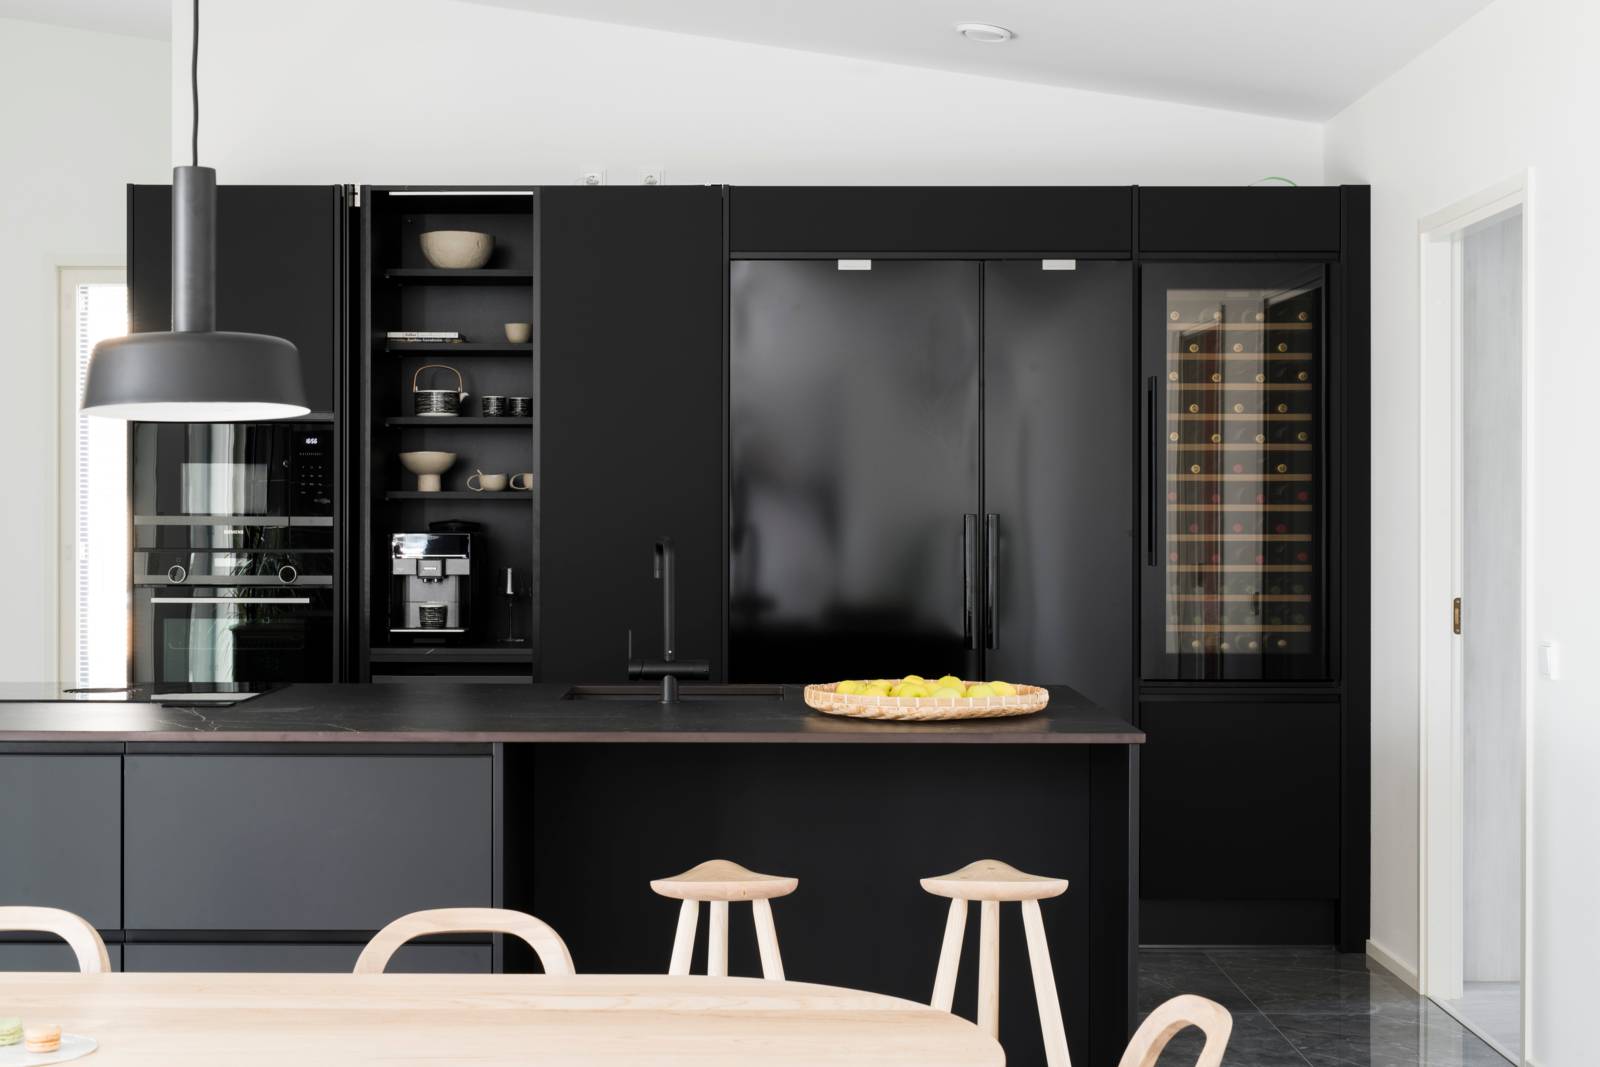 Kastelli Plazian keittiössä luotetaan trendikkääseen mustaan. 